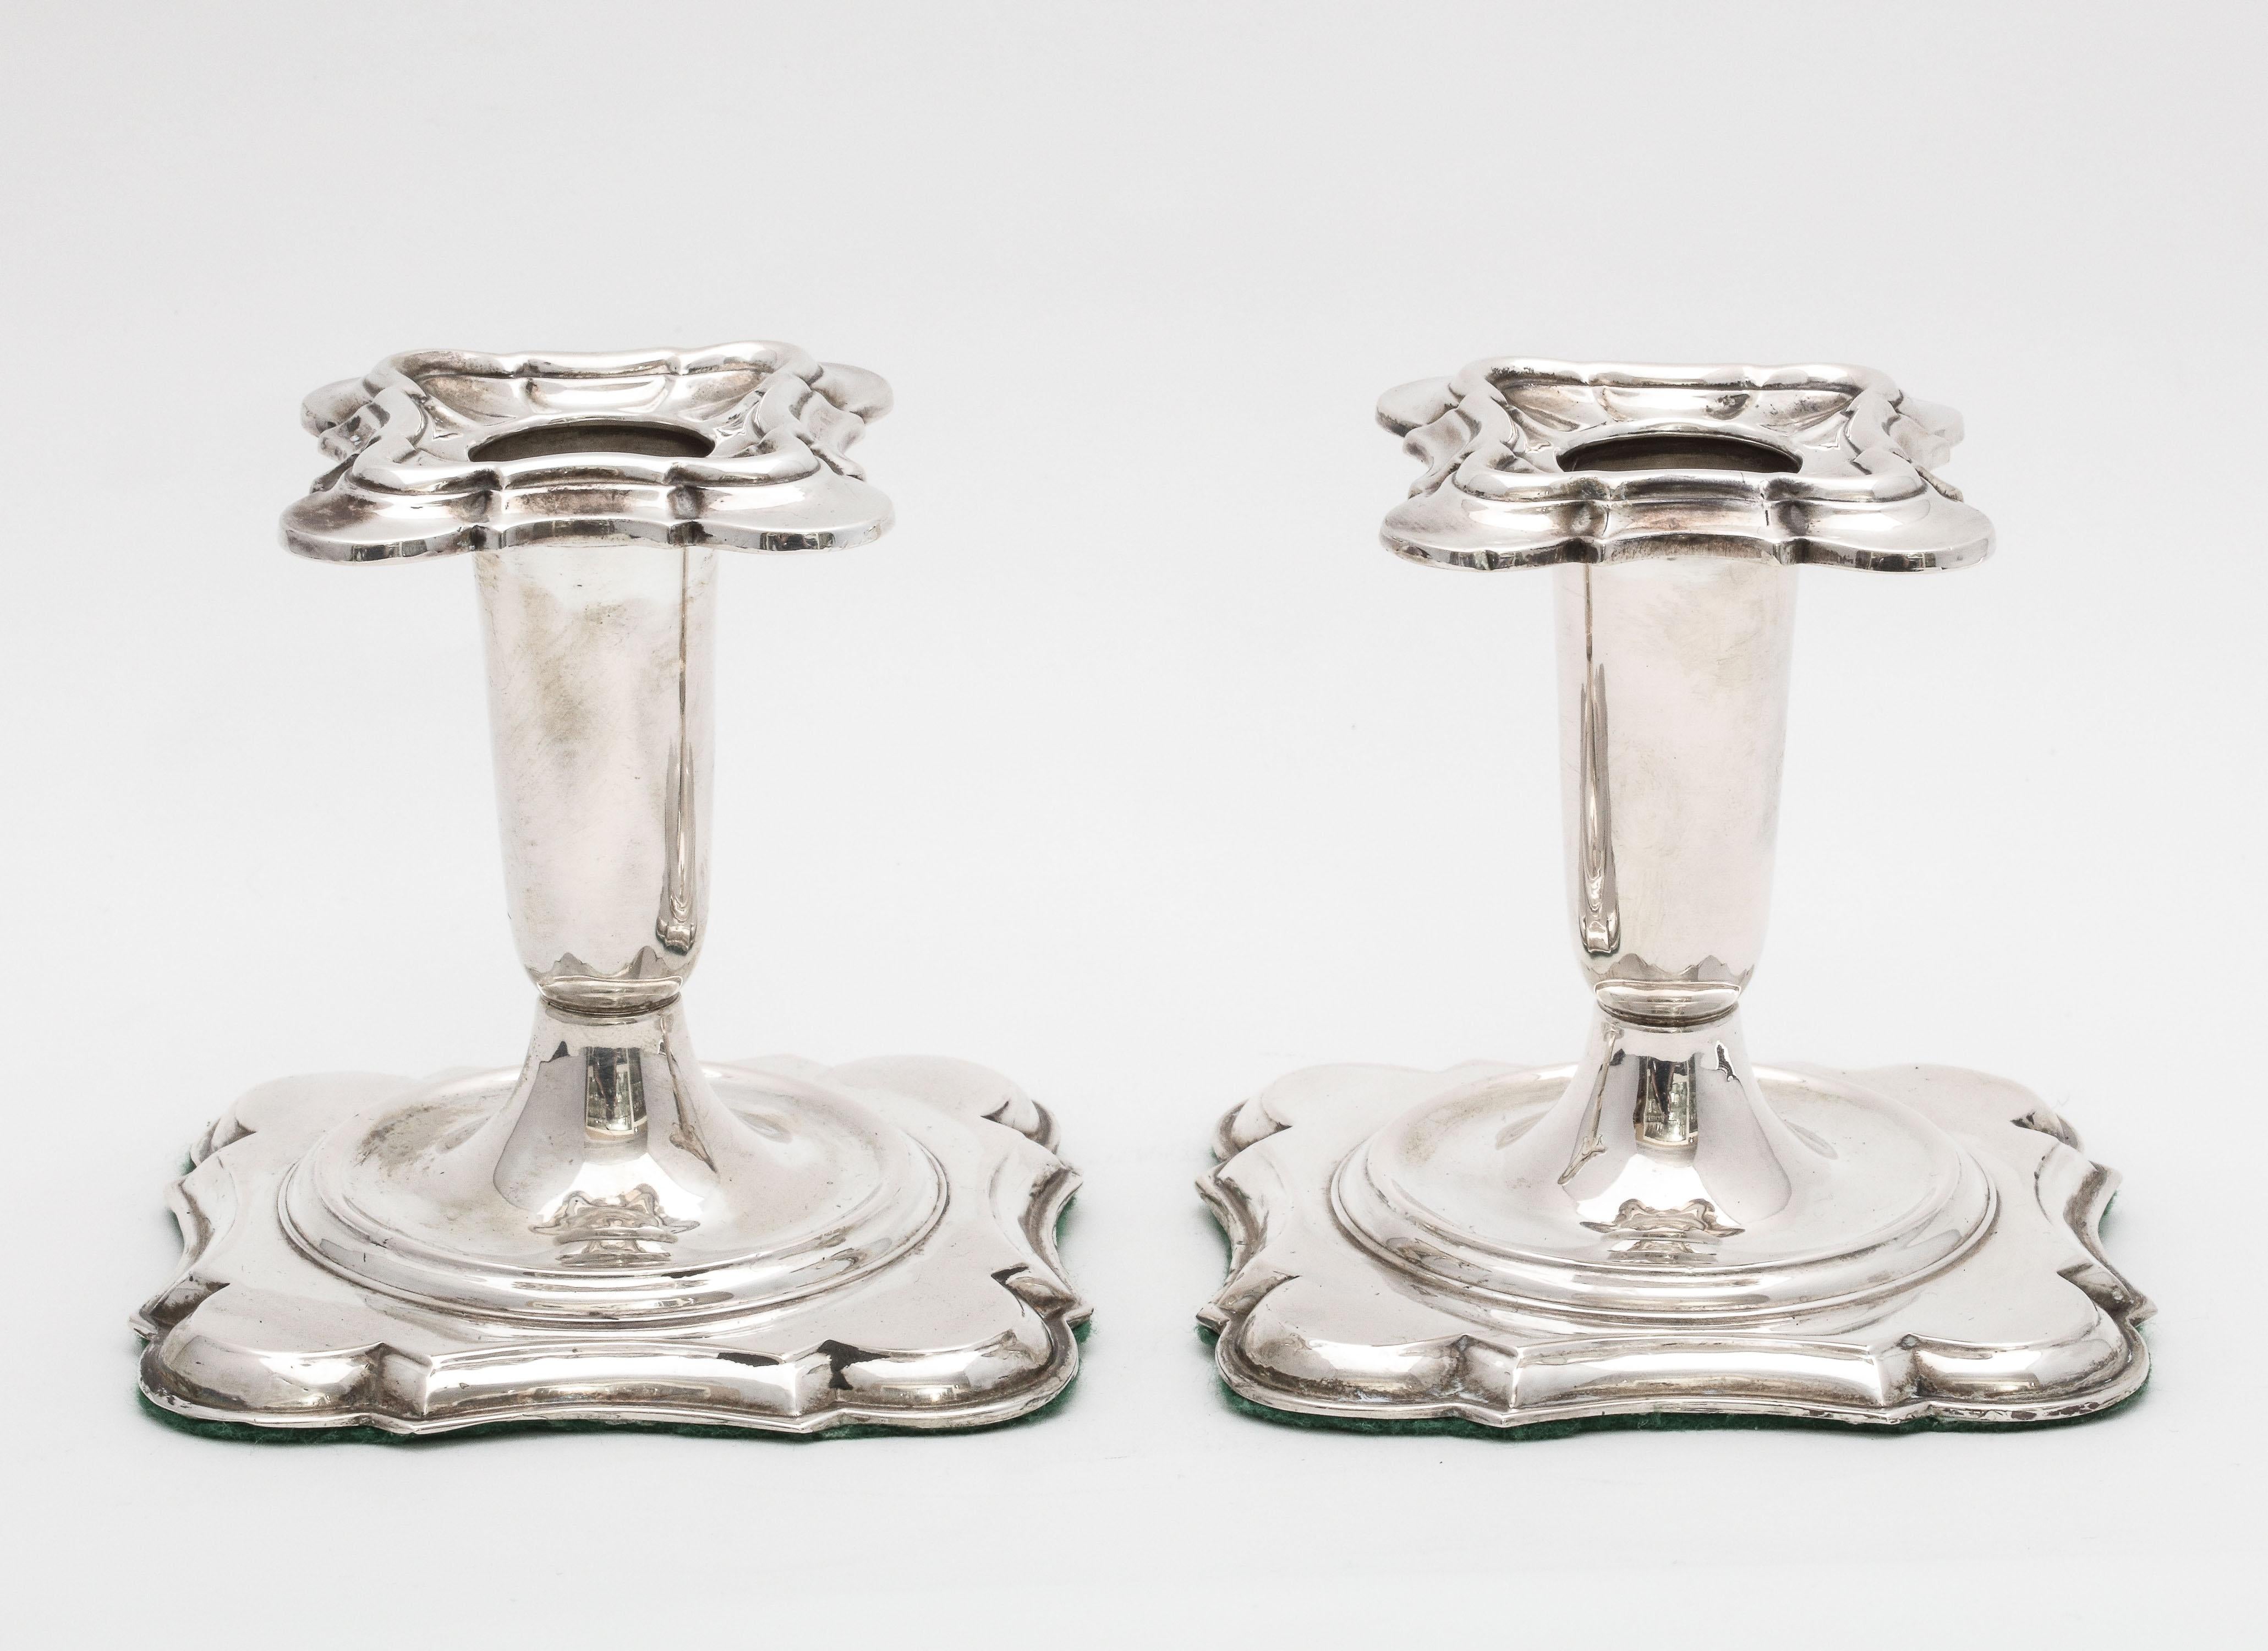 Kerzenhalter aus kontinentalem Silber (.835) im georgianischen Stil, Norwegen, um 1930, Theodor Olsens, Hersteller. Jeder der Kerzenständer misst 3 3/4 Zoll hoch x 3 3/4 Zoll breit x 3 3/4 Zoll tief. Die Basis jedes Kerzenhalters ist beschwert und